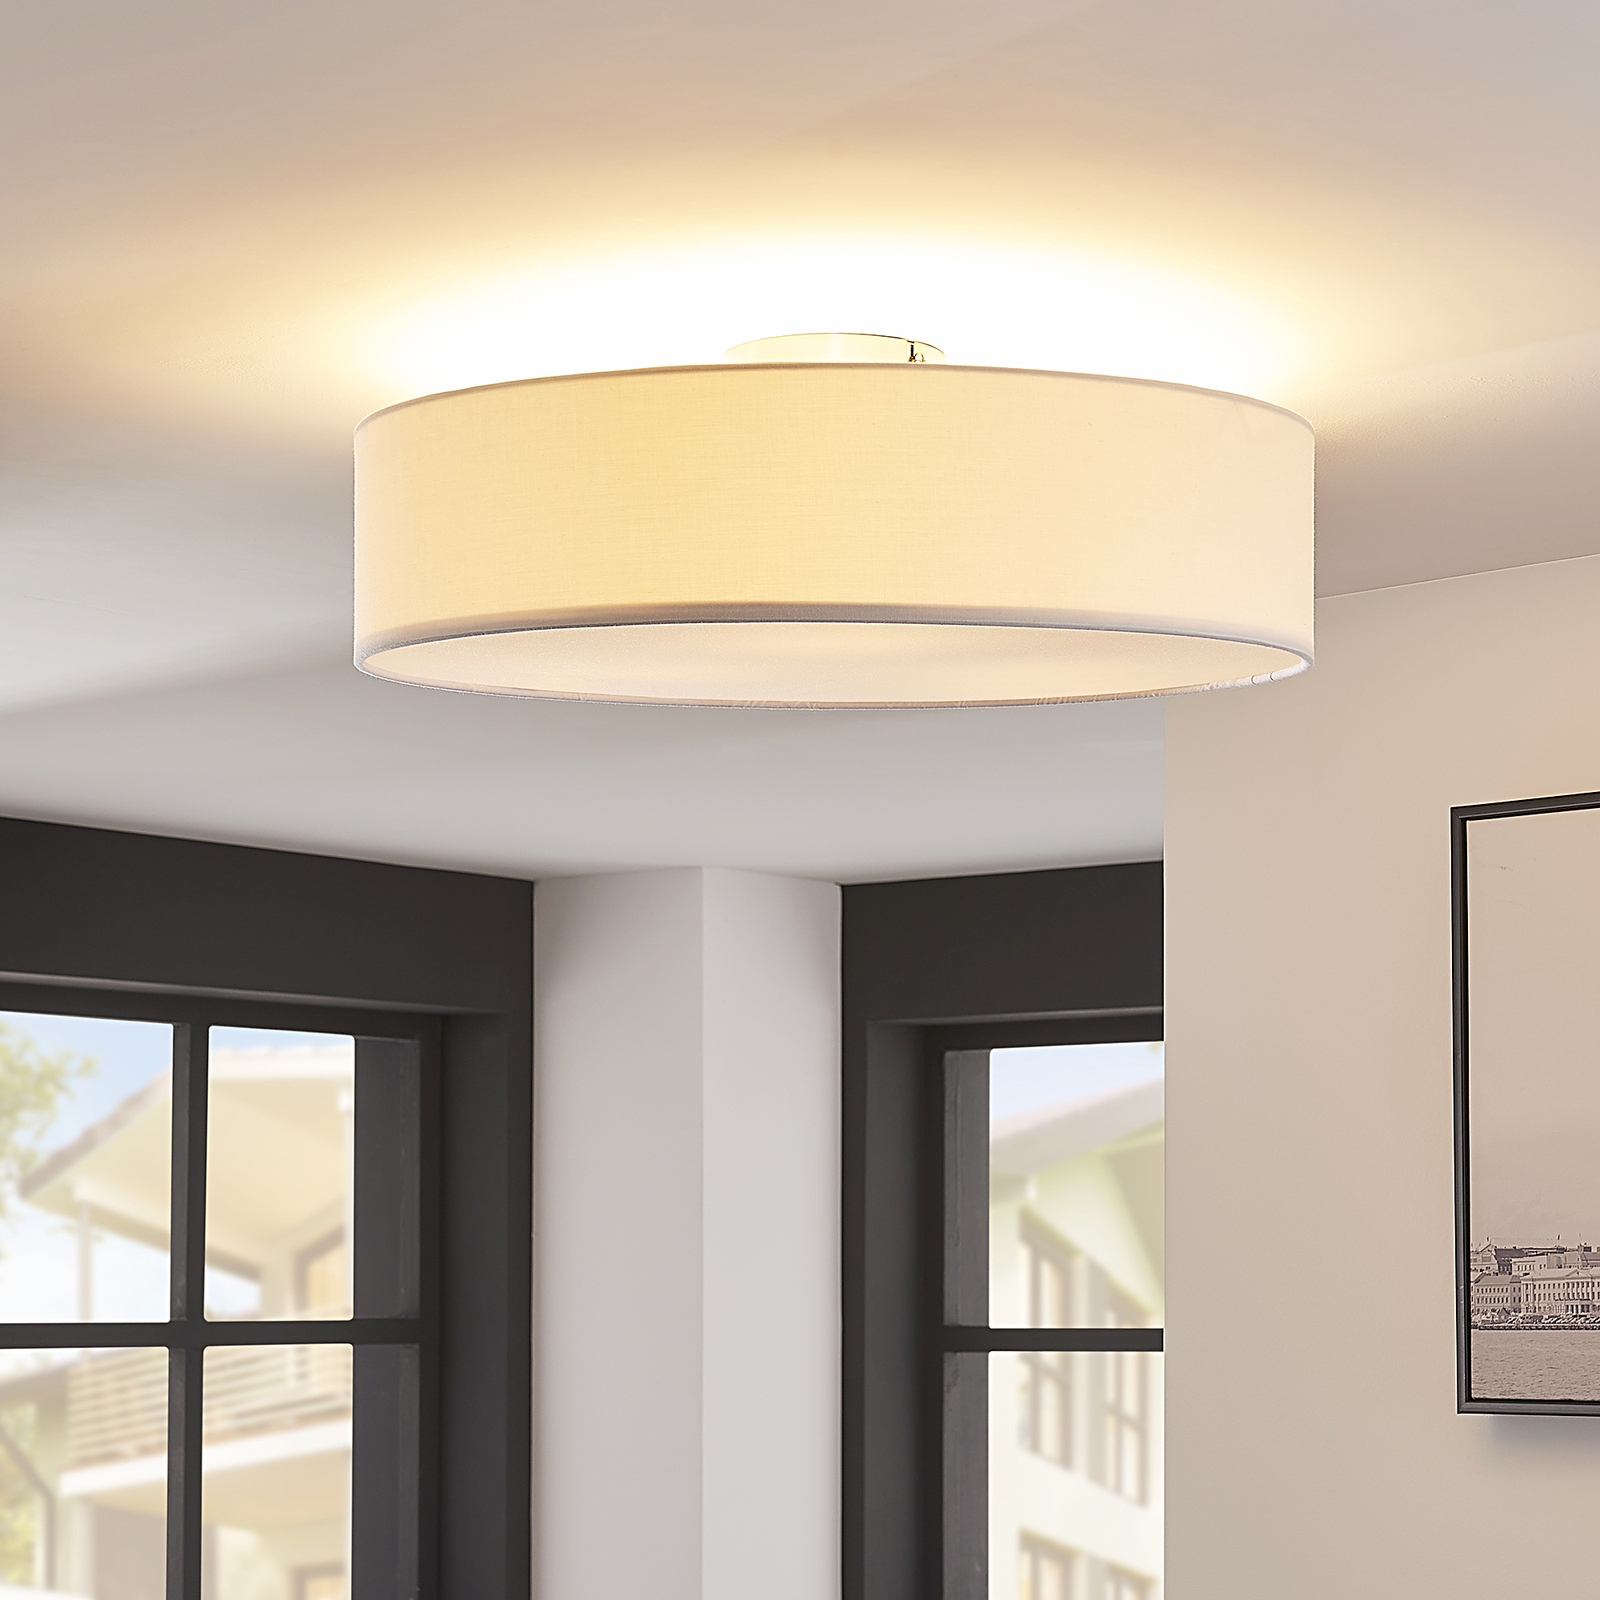 Sebatin ceiling light, E27, 50 cm, white